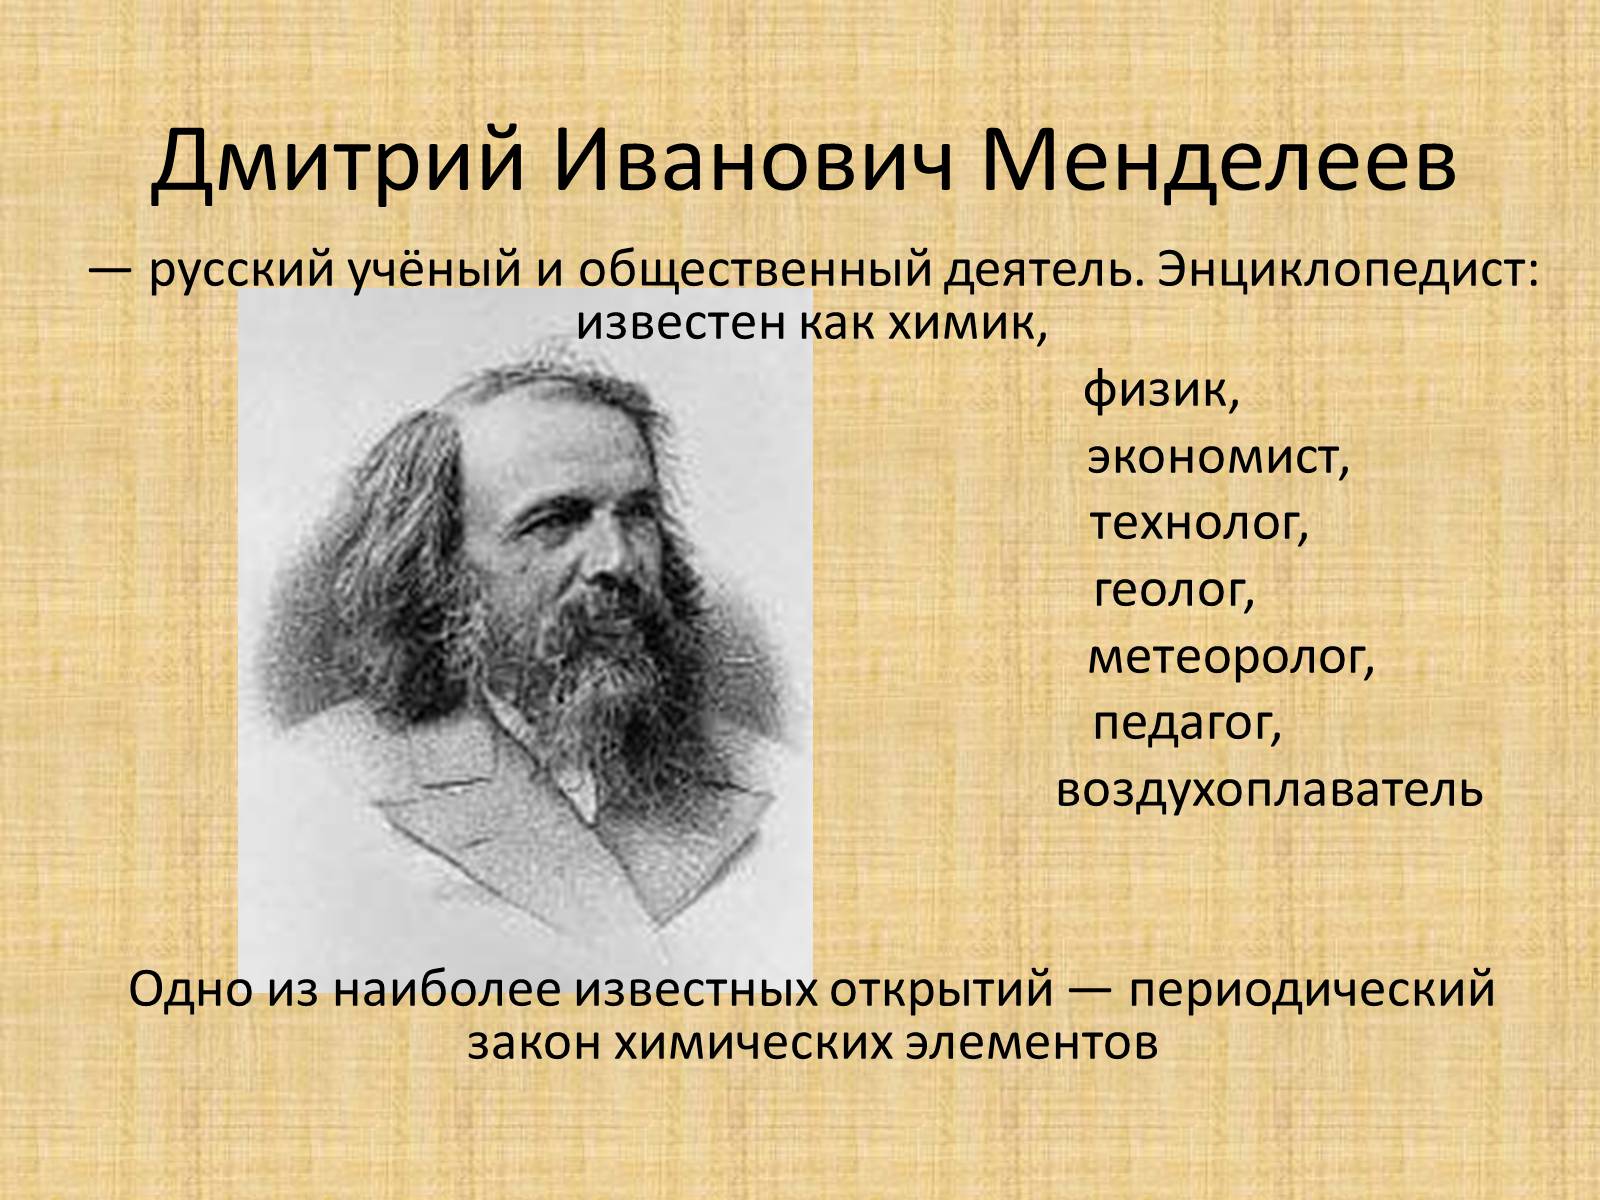 Дмитрий Иванович Менделеев – русский ученый-энциклопедист